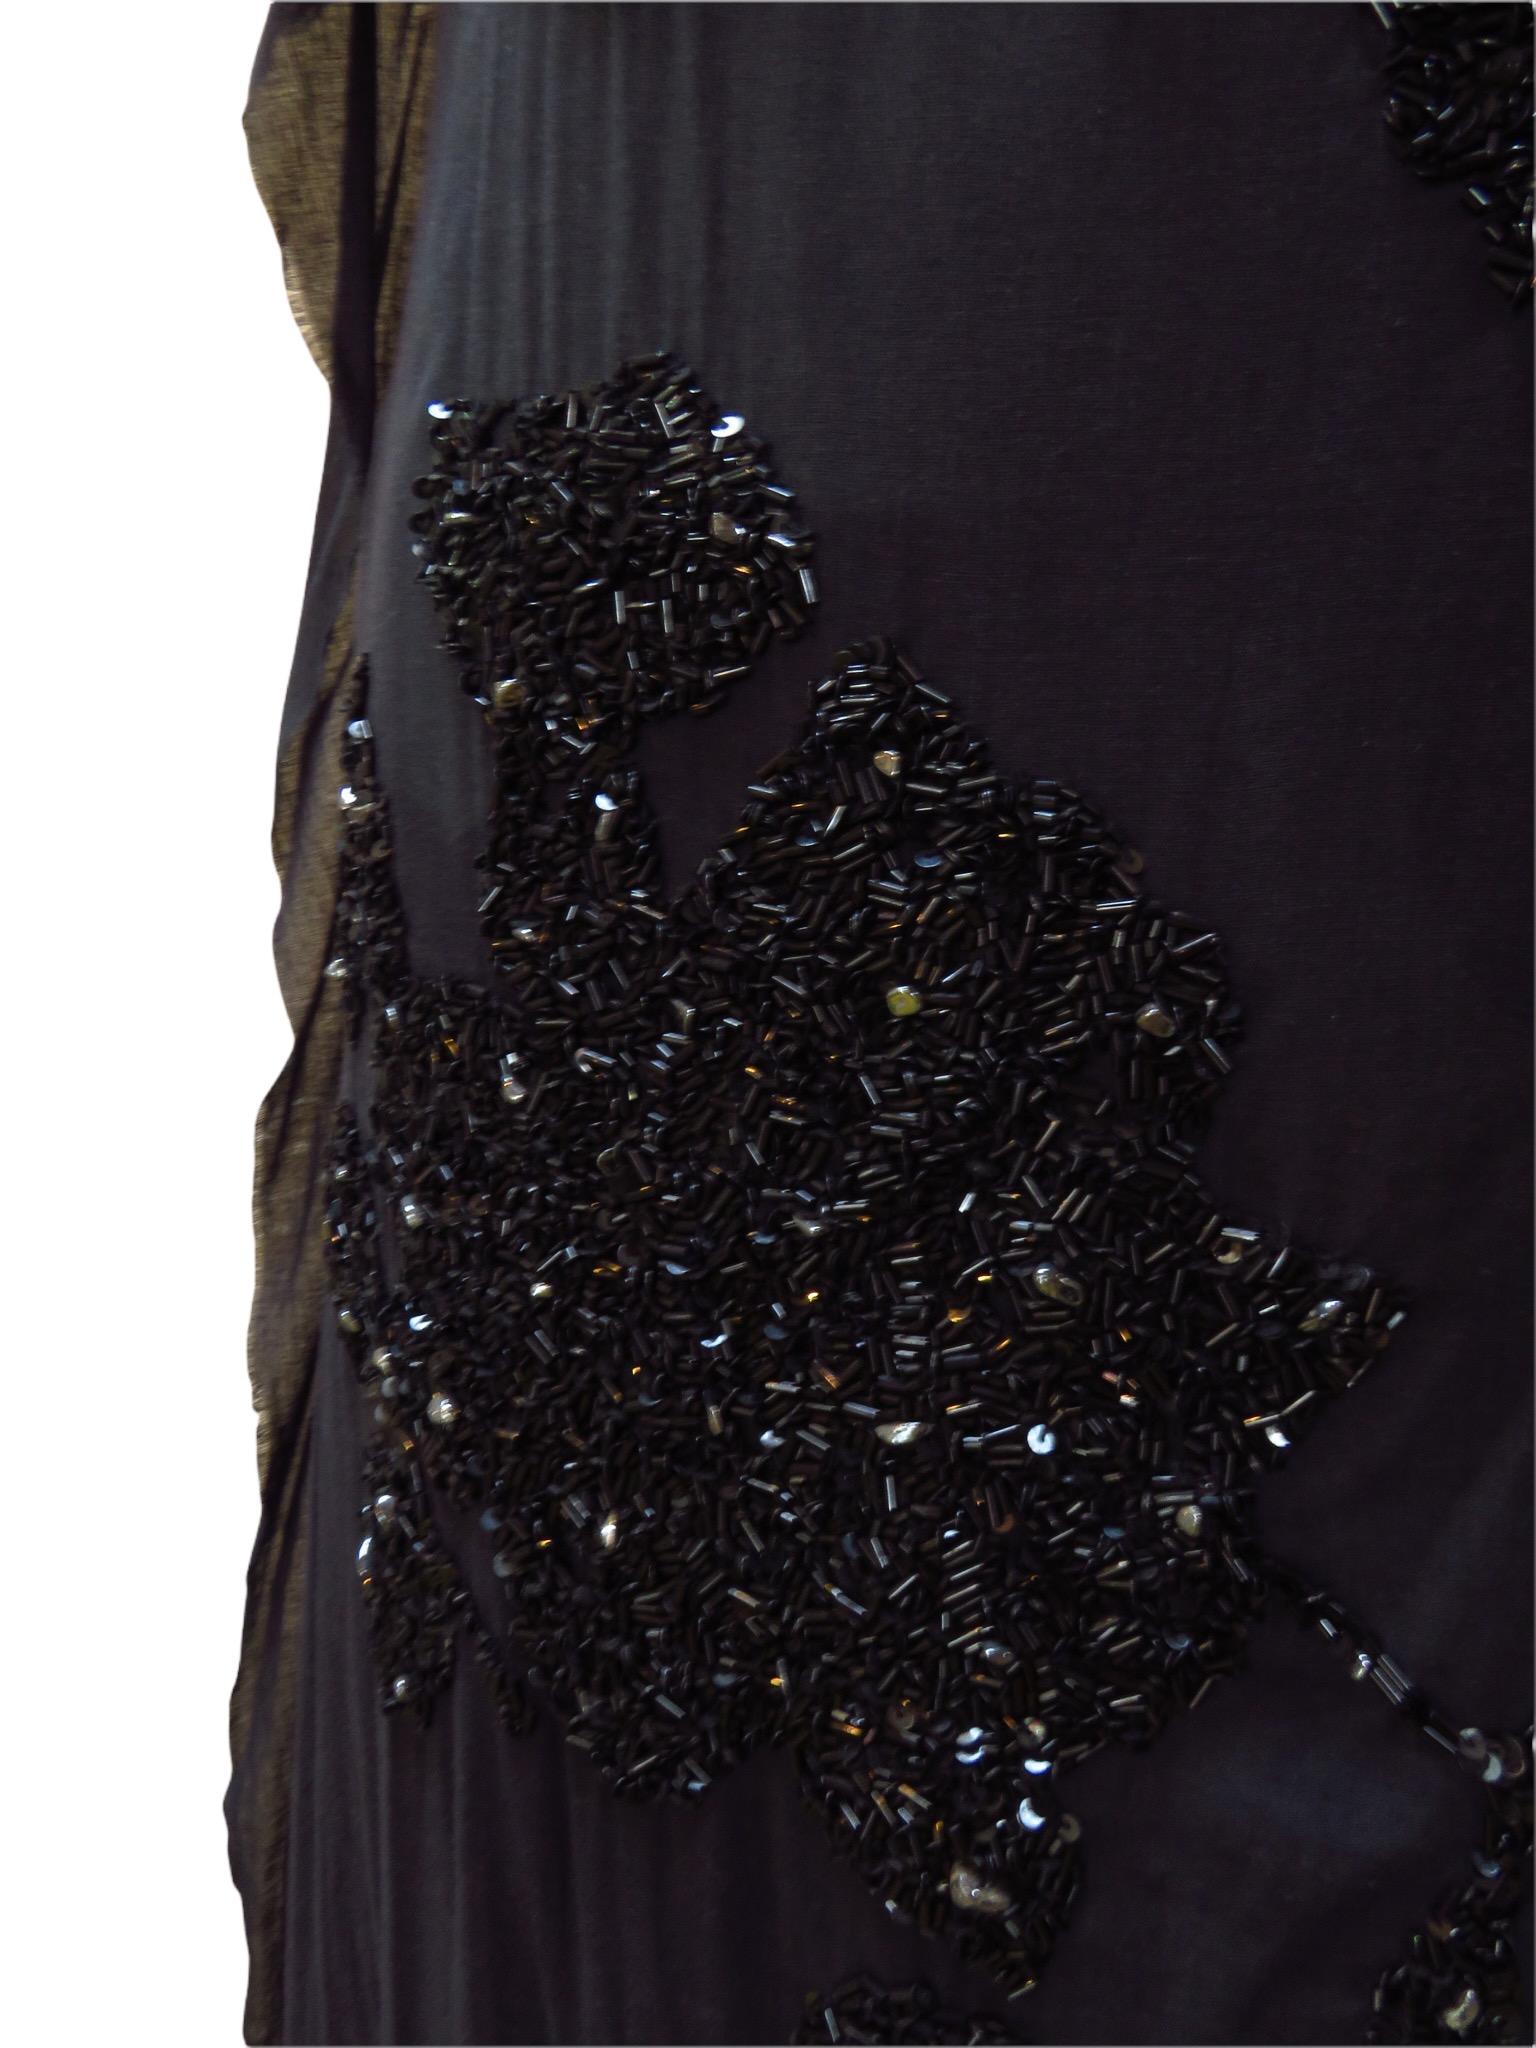 Peachoo + Krejberg Hand-Embroidered Dress For Sale 4